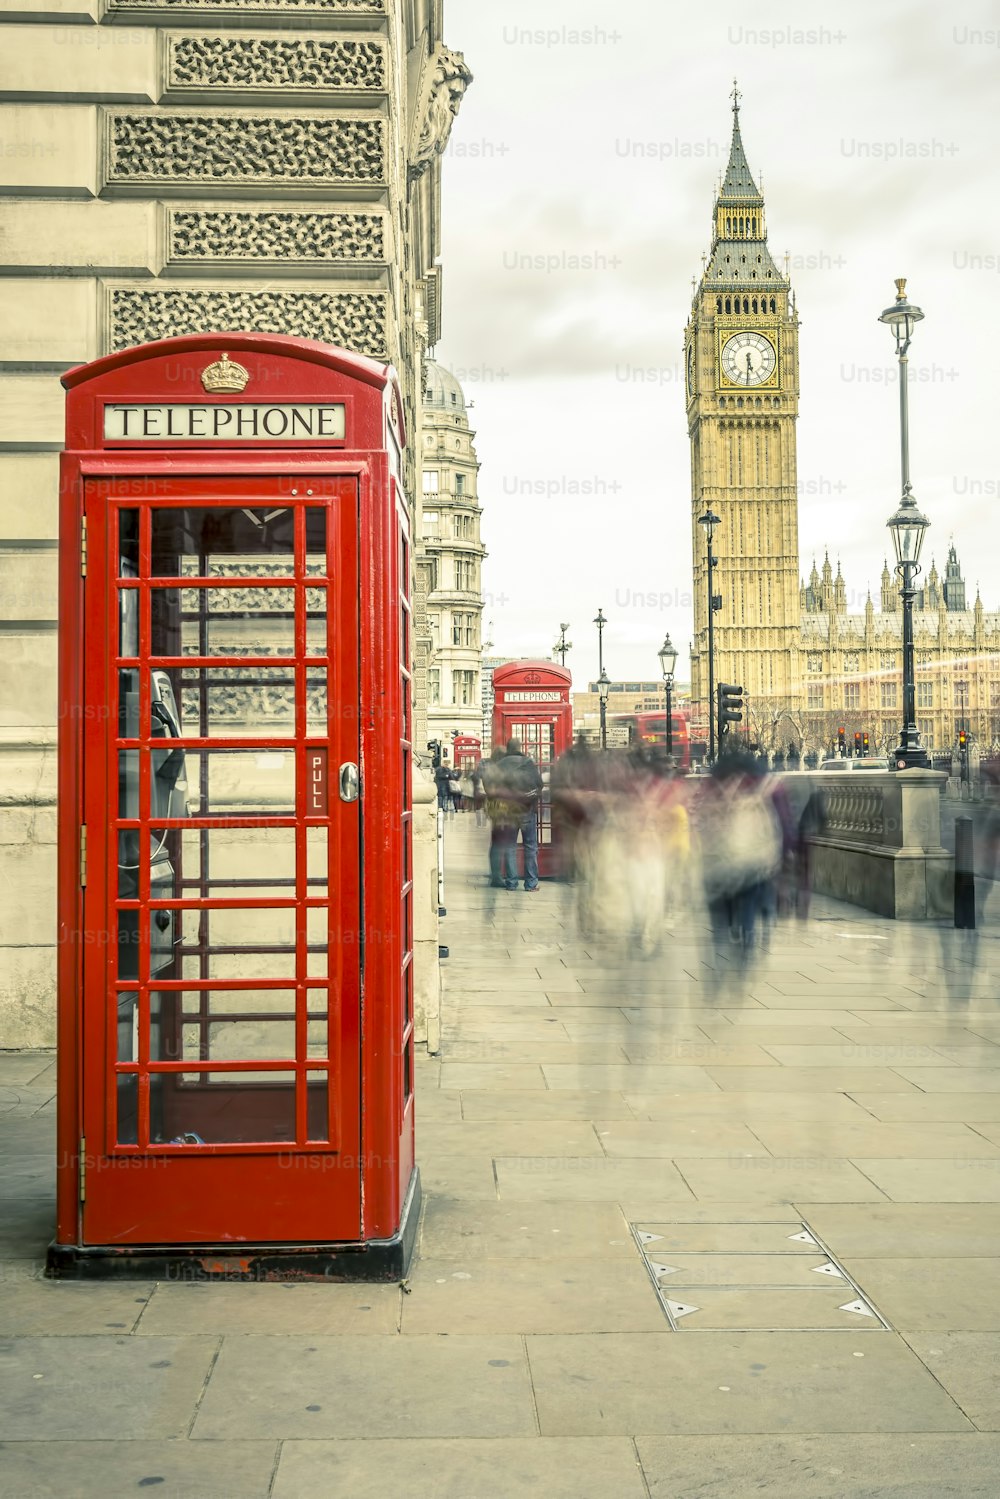 A icônica cabine telefônica vermelha britânica antiga com o Big Ben ao fundo no centro de Londres